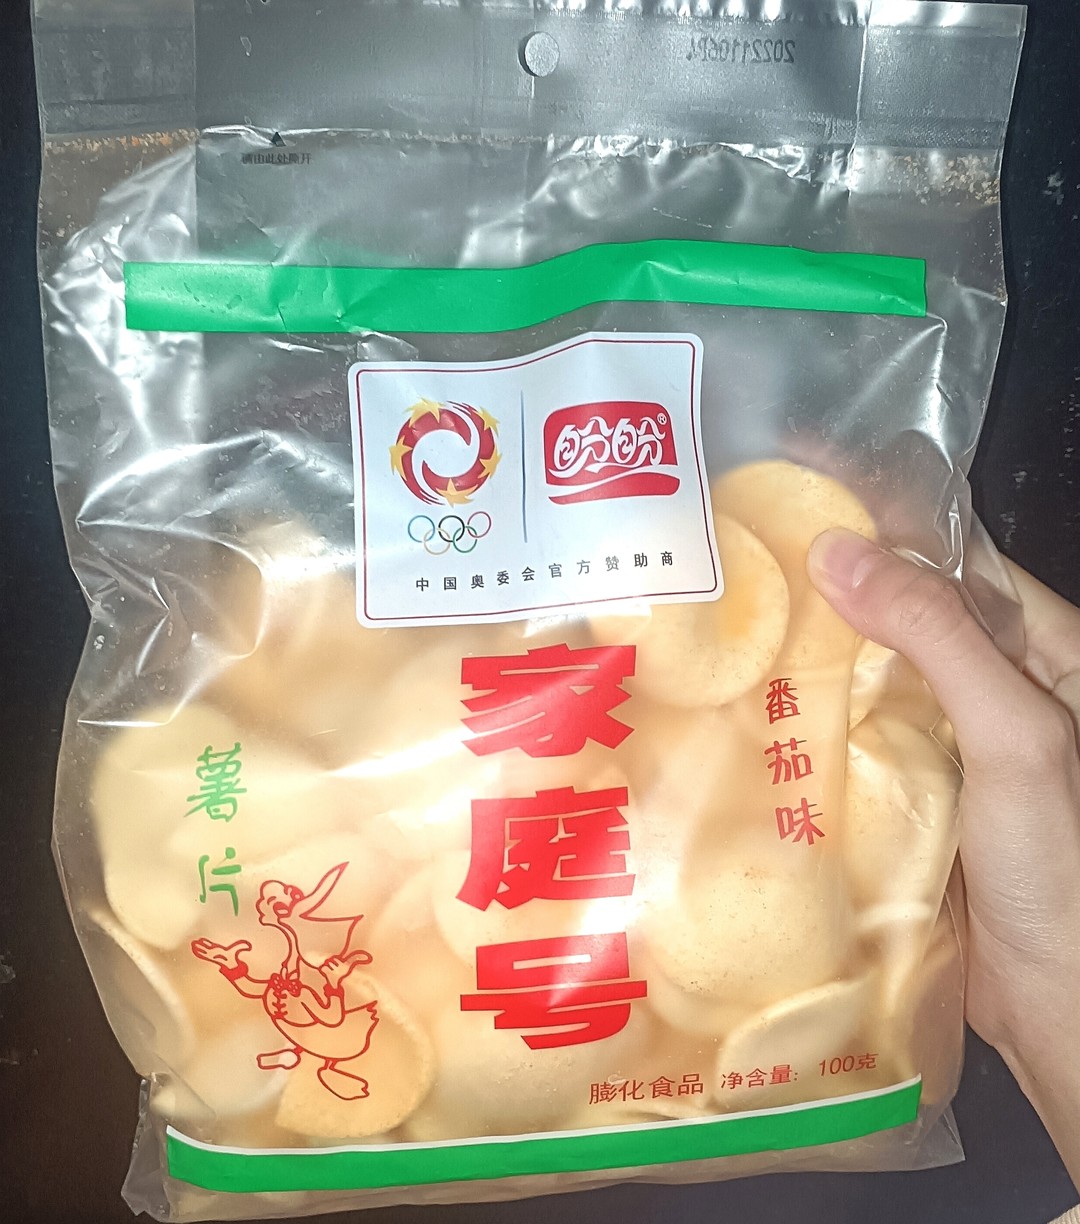 盼盼家庭号薯片番茄味 Snack Khoai Tây Miếng Pan Pan Vị Cà Chua 100g (40)